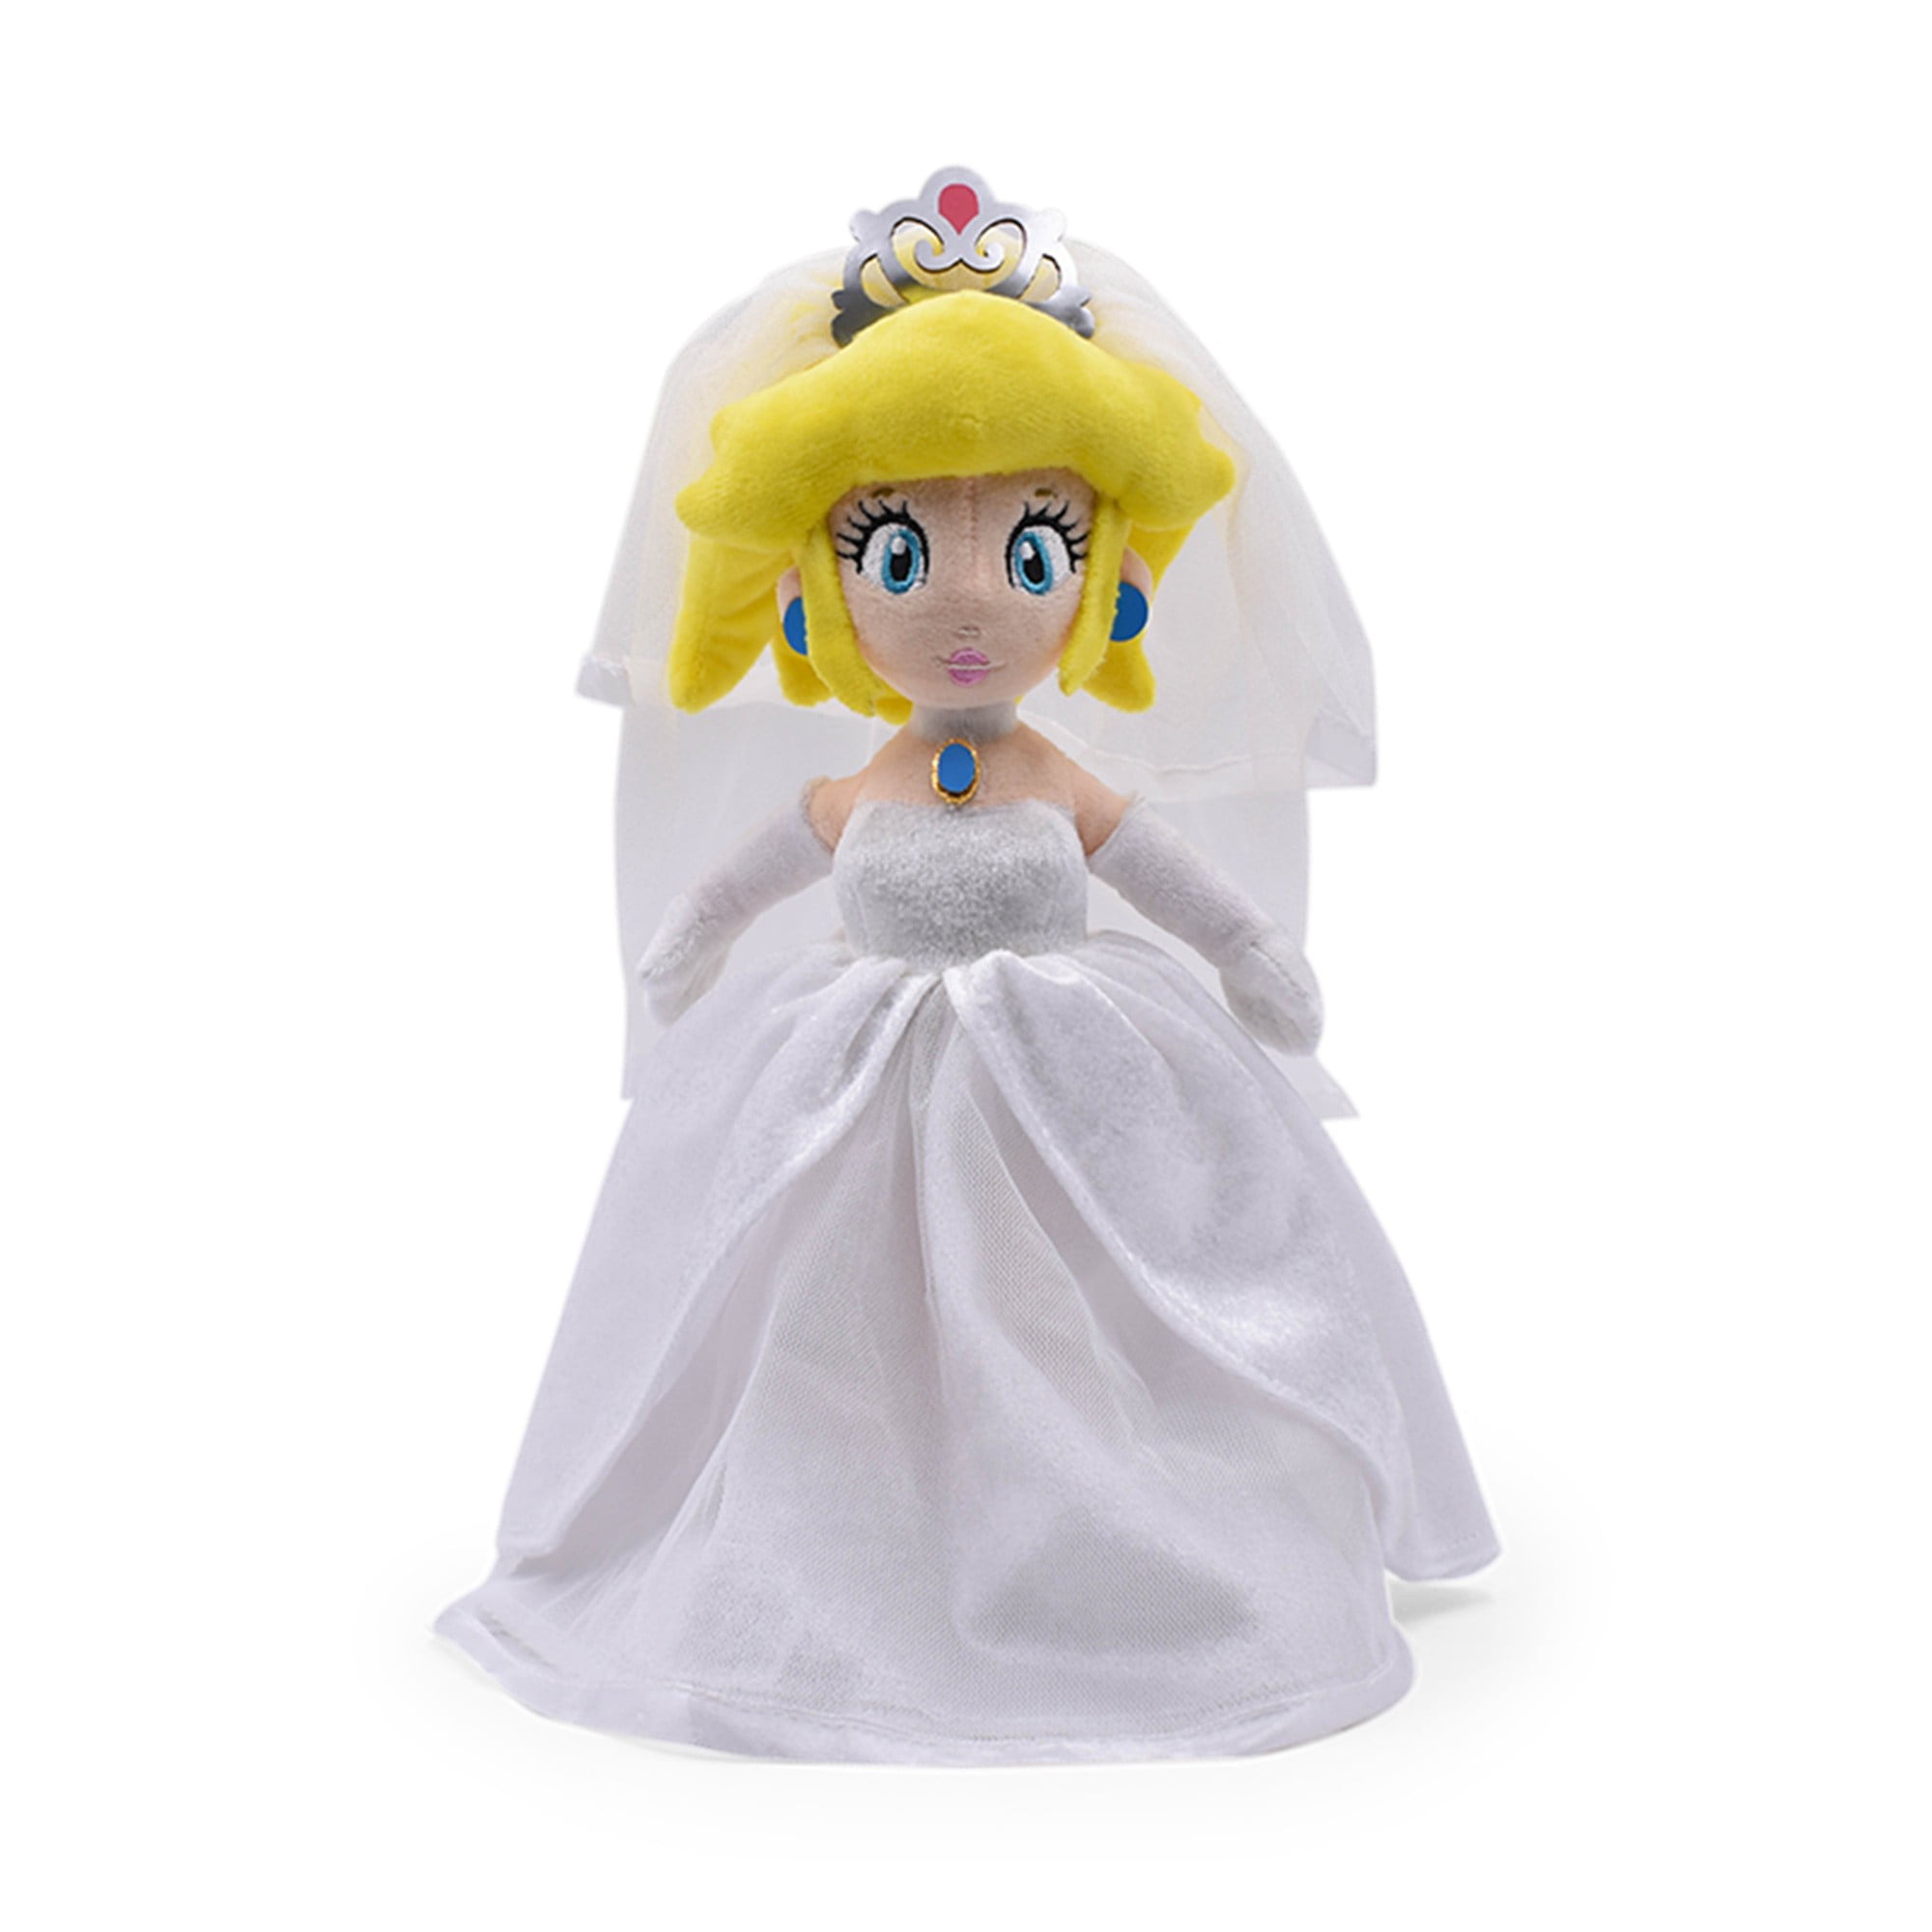 Super Mario Odyssey Peach Princess Prinzessin Hochzeitskleid Plüsch Spielzeug 